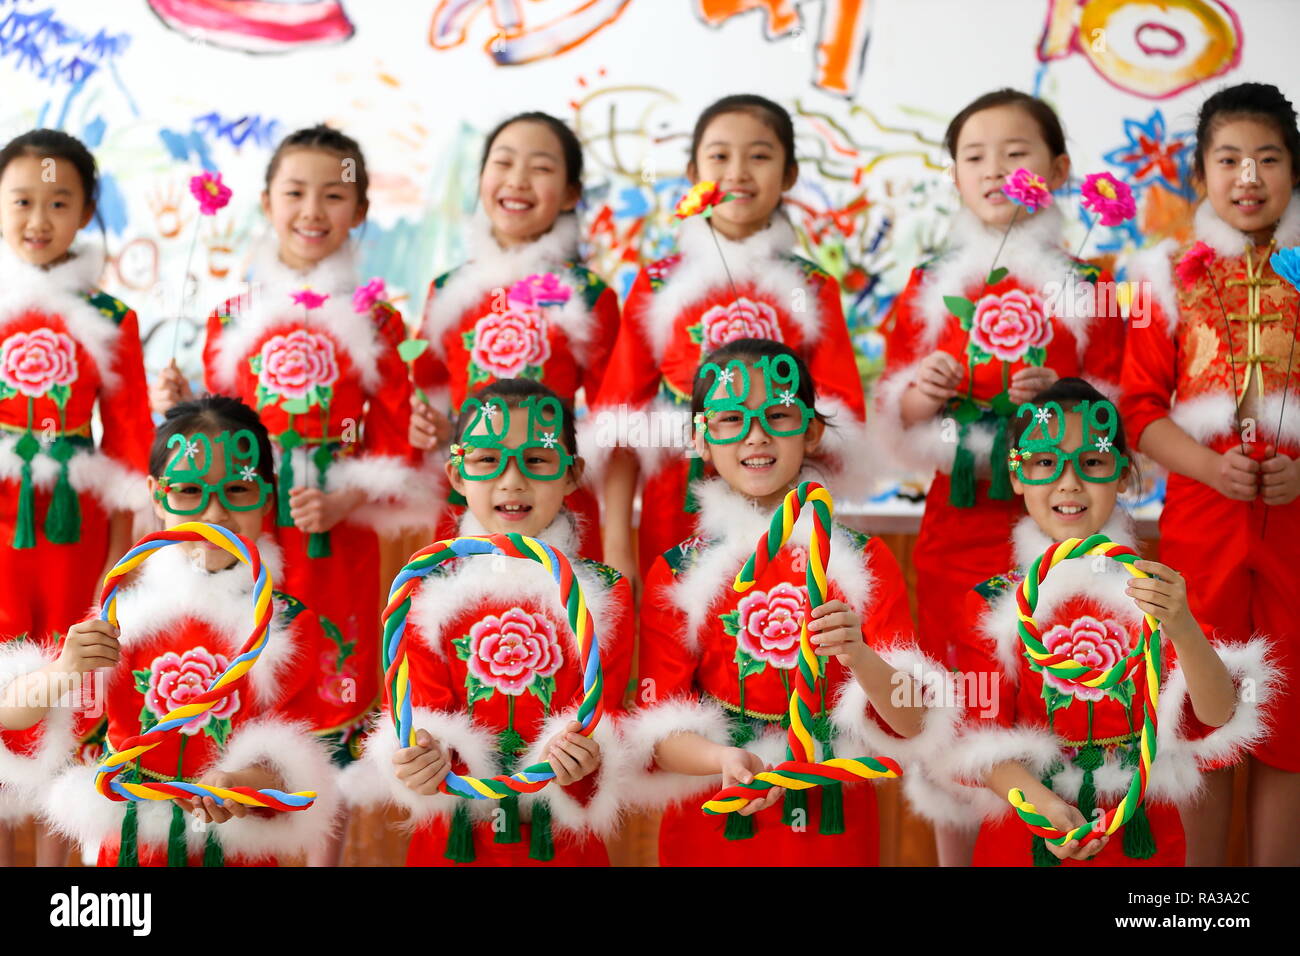 Qingdao, Cina Shandong. 1a gen, 2019. Gli alunni vestiti in costumi di festa posano per una foto di gruppo a Qingdao, Cina orientale della provincia di Shandong, 1 gennaio, 2019. Le varie attività sono state organizzate in tutta la Cina per salutare l'anno di 2019. Credito: Liang Xiaopeng/Xinhua/Alamy Live News Foto Stock